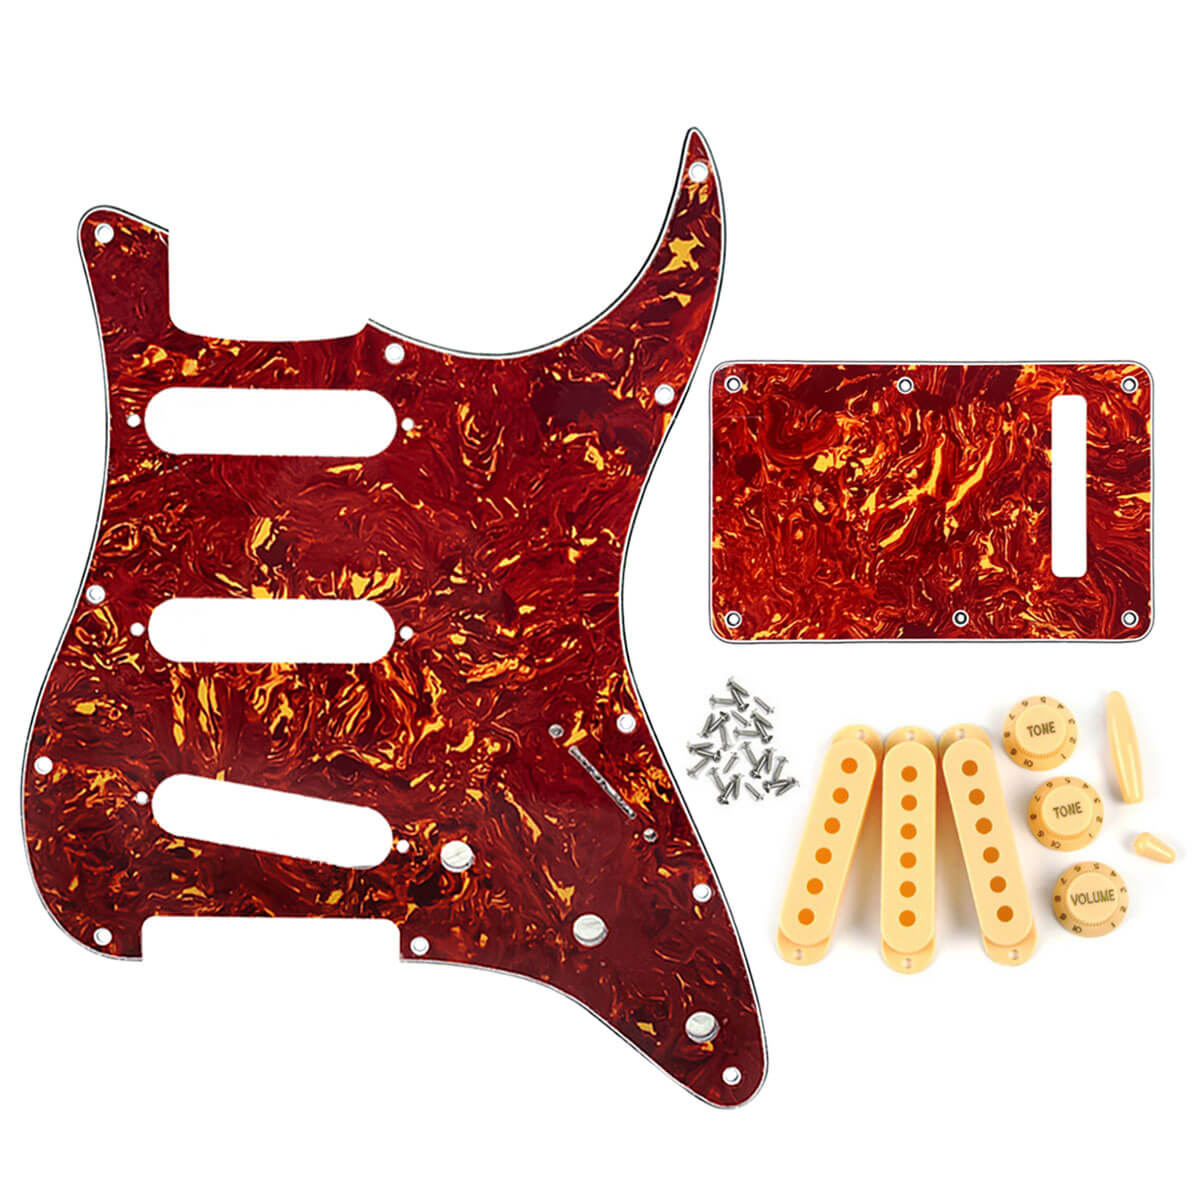 FLEOR Red Tortoise SSS Guitar Pickguard Strat Back Plate | iknmusic